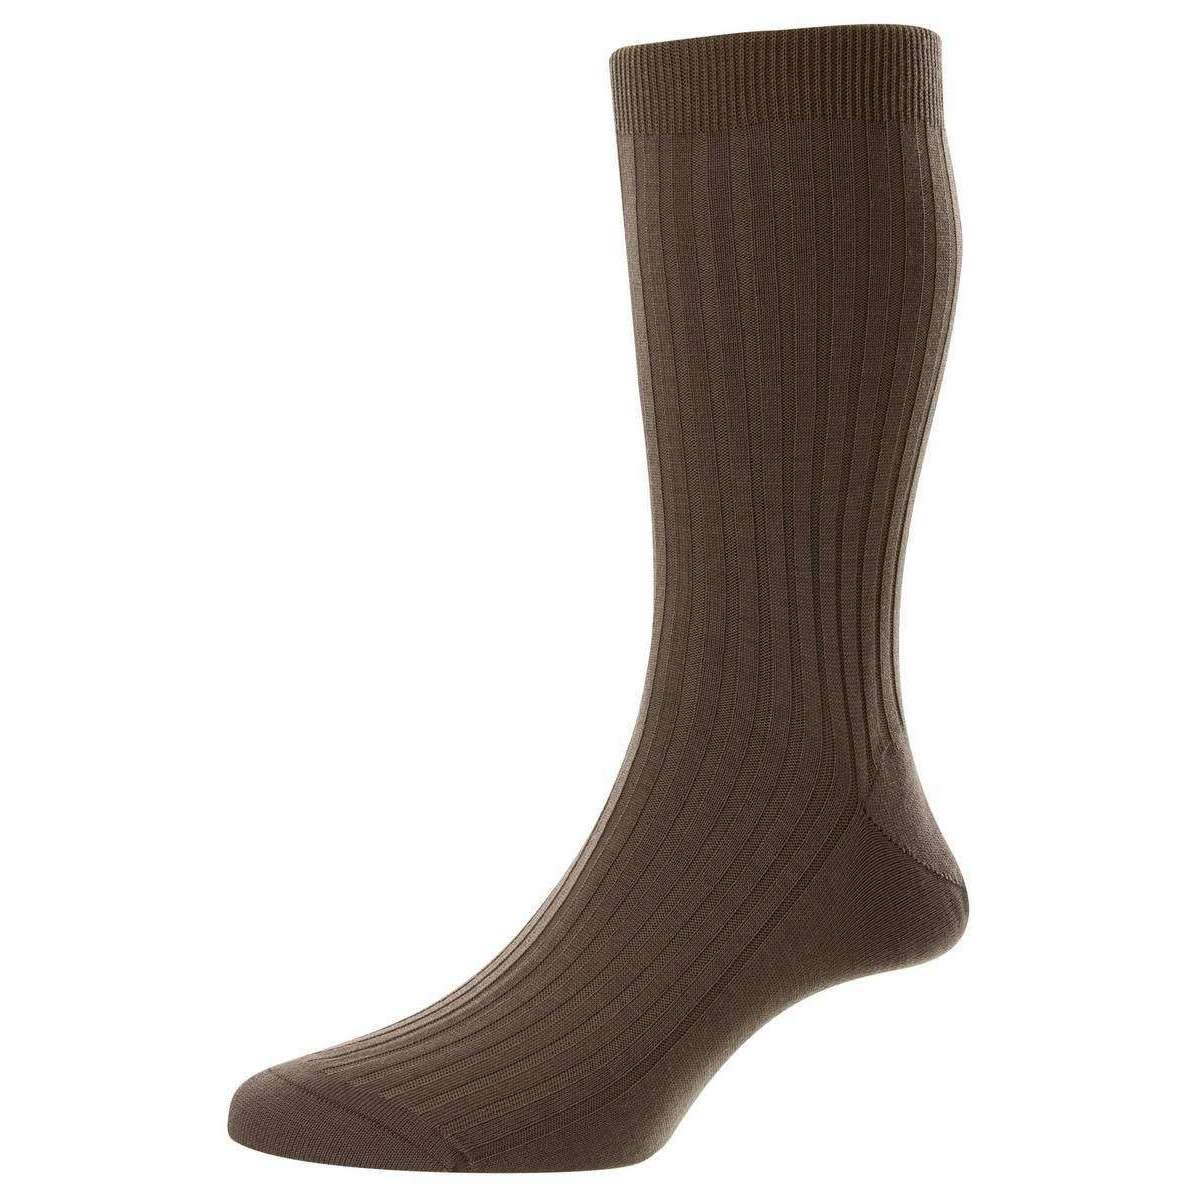 Pantherella Rutherford Merino Royale Wool Socks - Brown Taupe